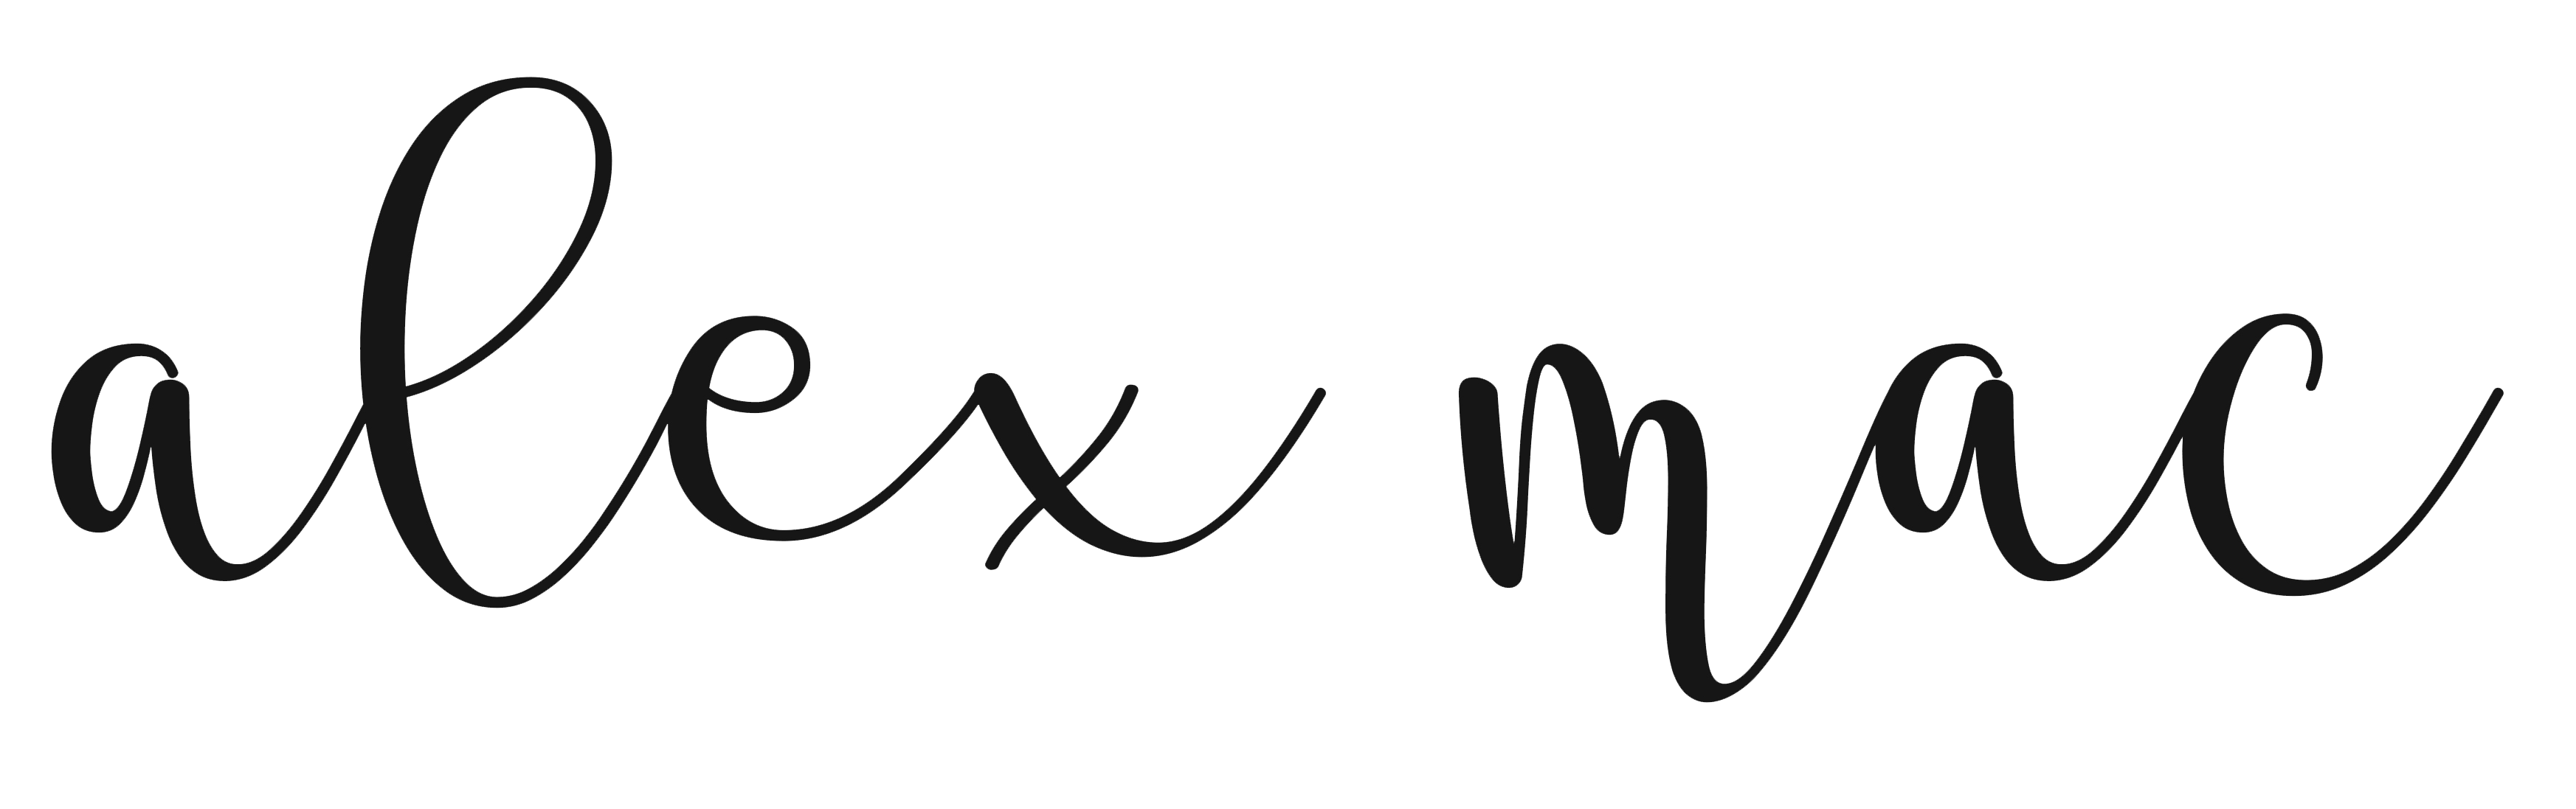 Alex Mac Creation Logo